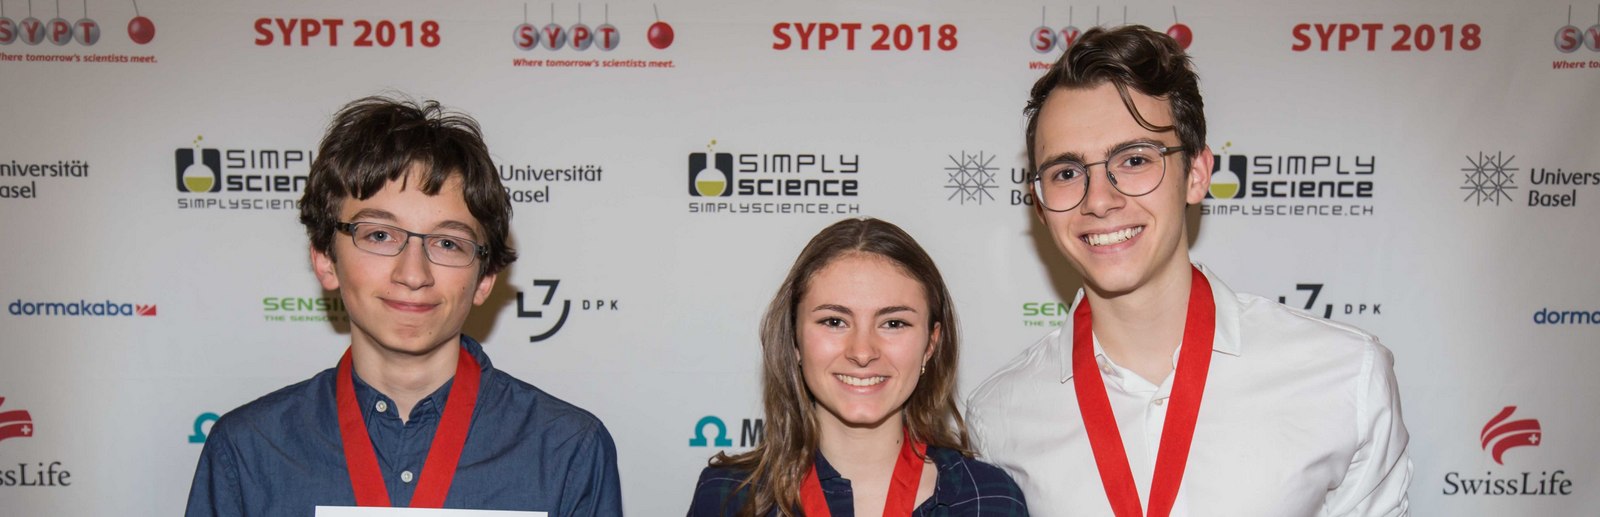 SYPT 2018 - Sieger